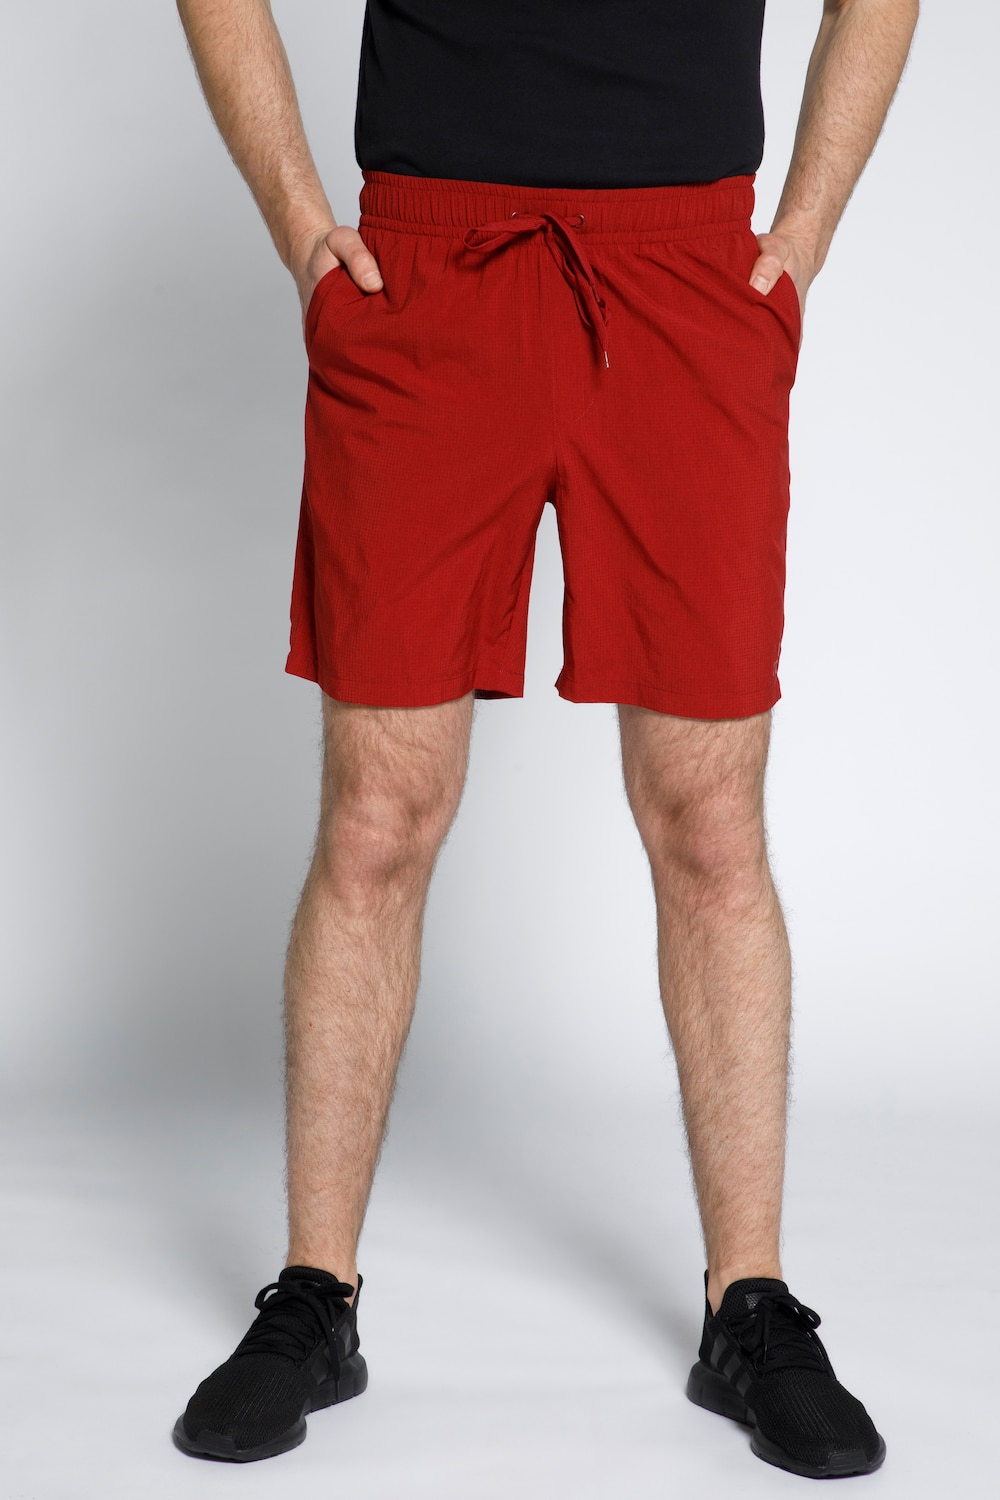 Grote Maten JAY-PI korte broek, Heren, rood, Maat: 3XL, Polyester, JP1880